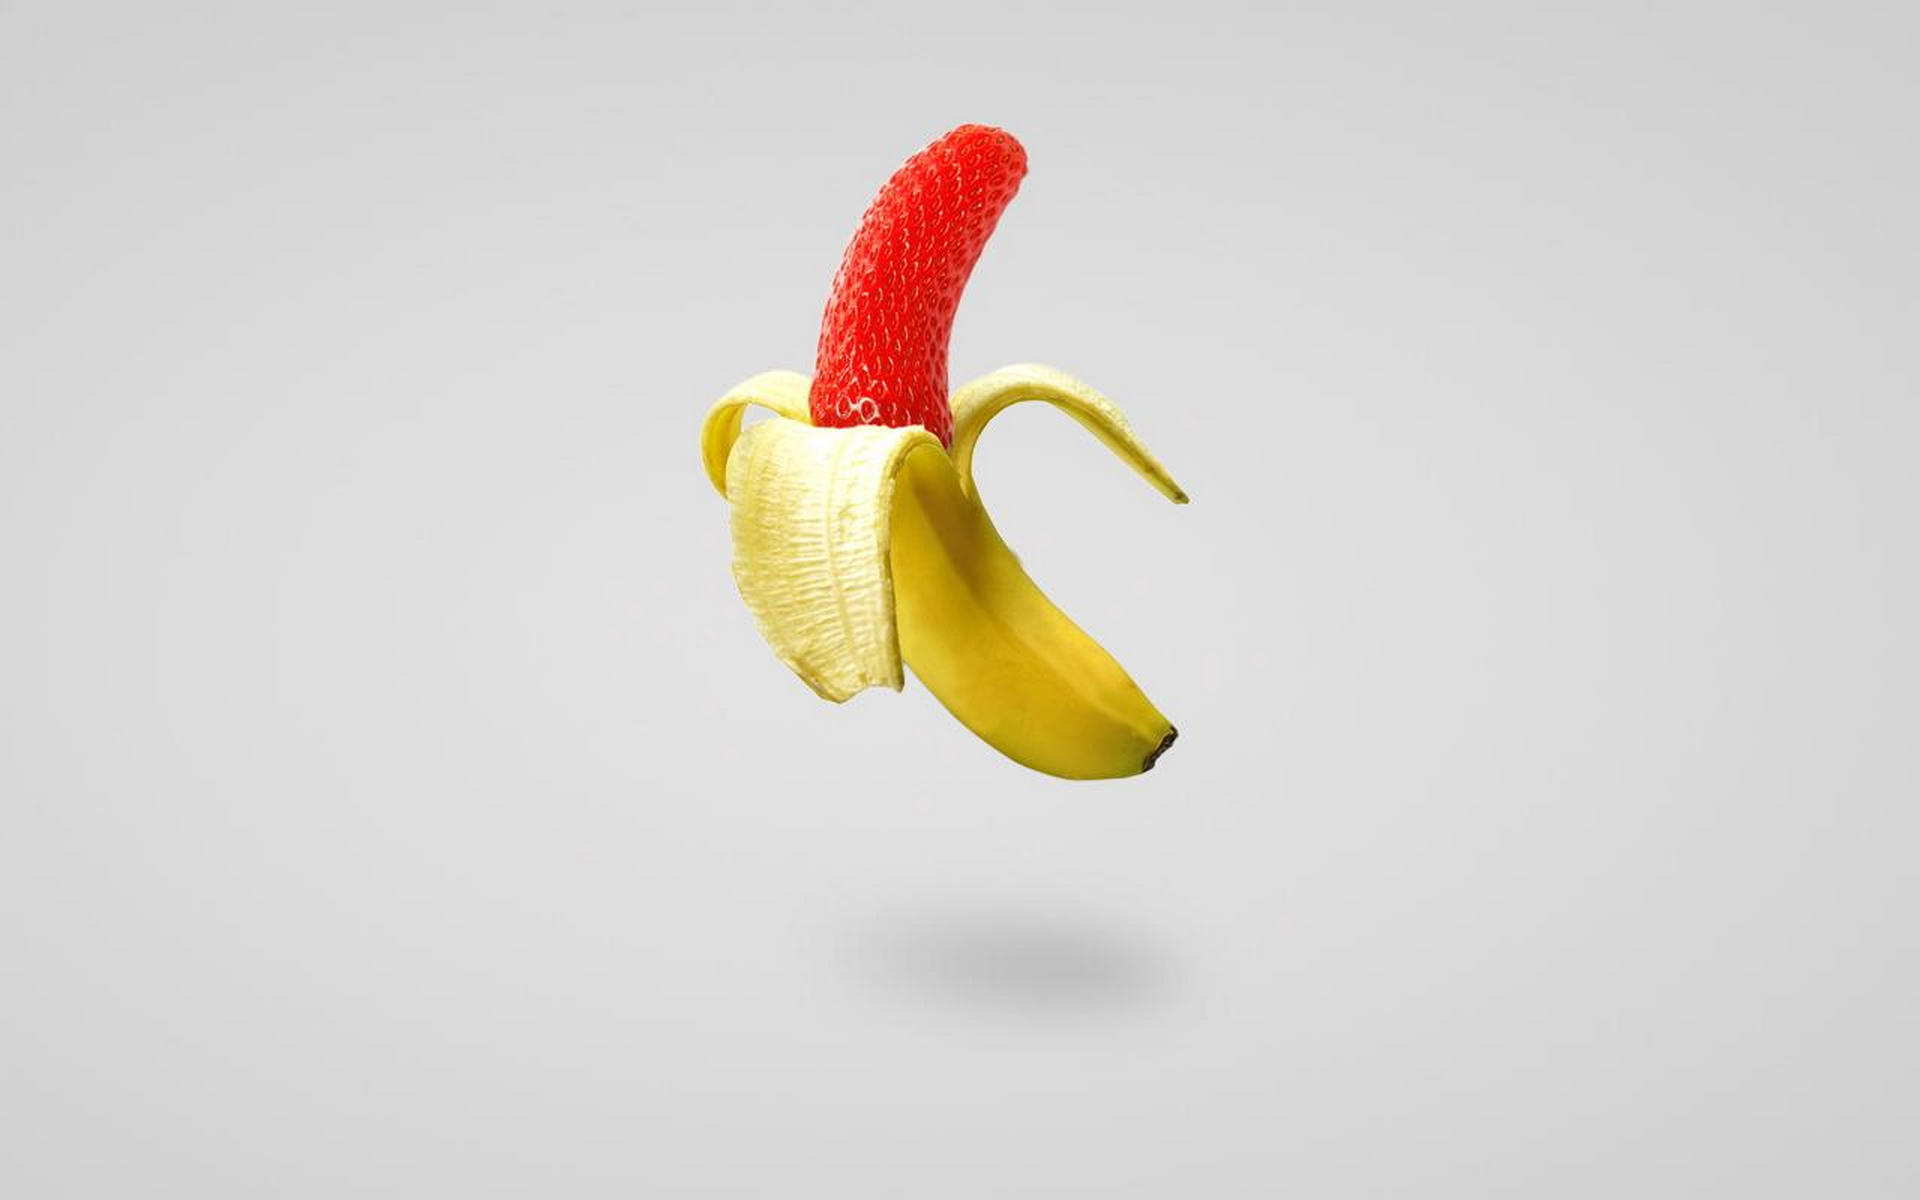 очищенный банан и клубника, скачать фото, обои для рабочего стола, banana wallpapers